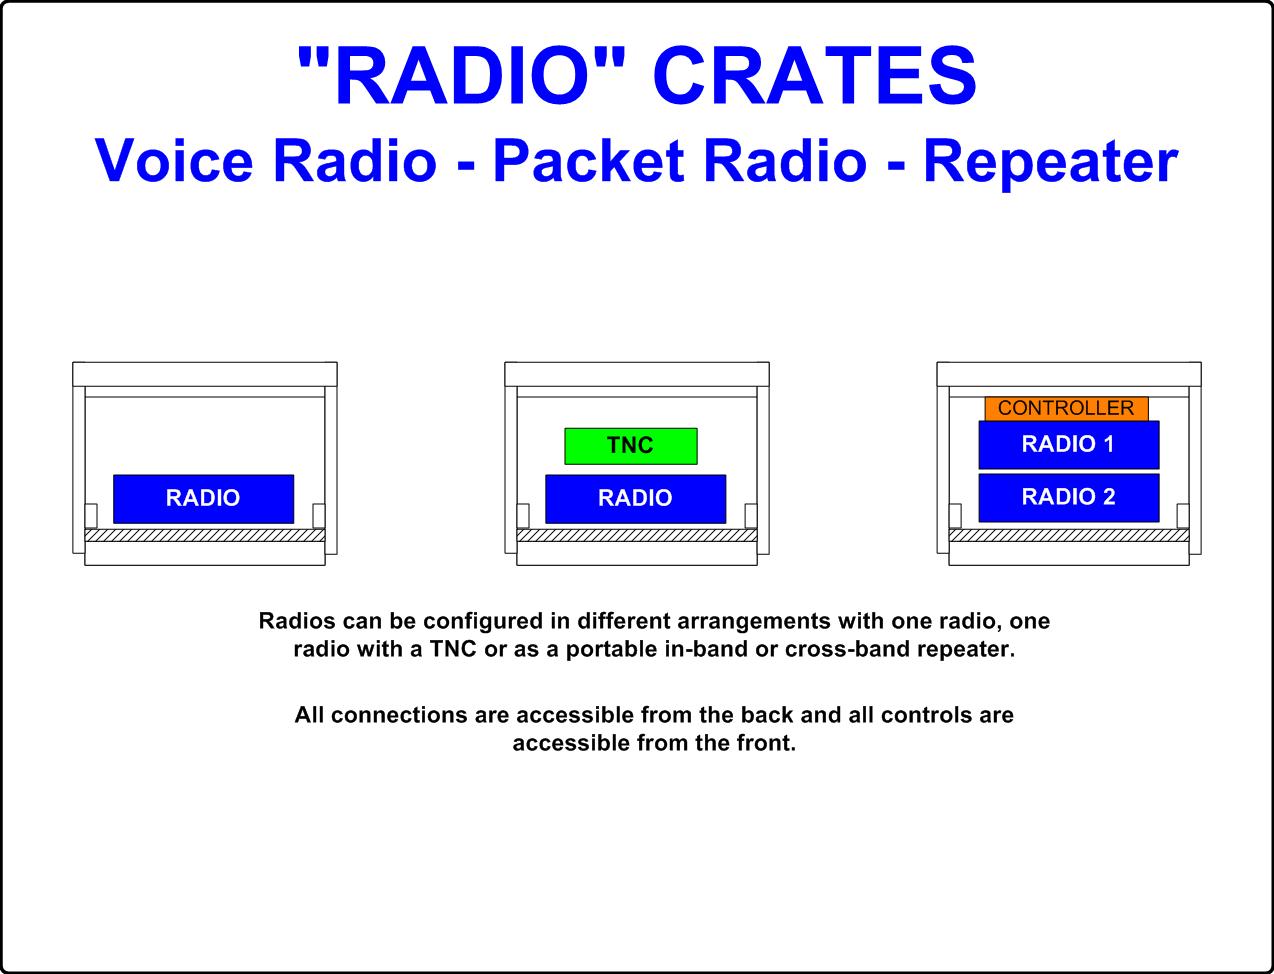 Diagram of Radio Crates